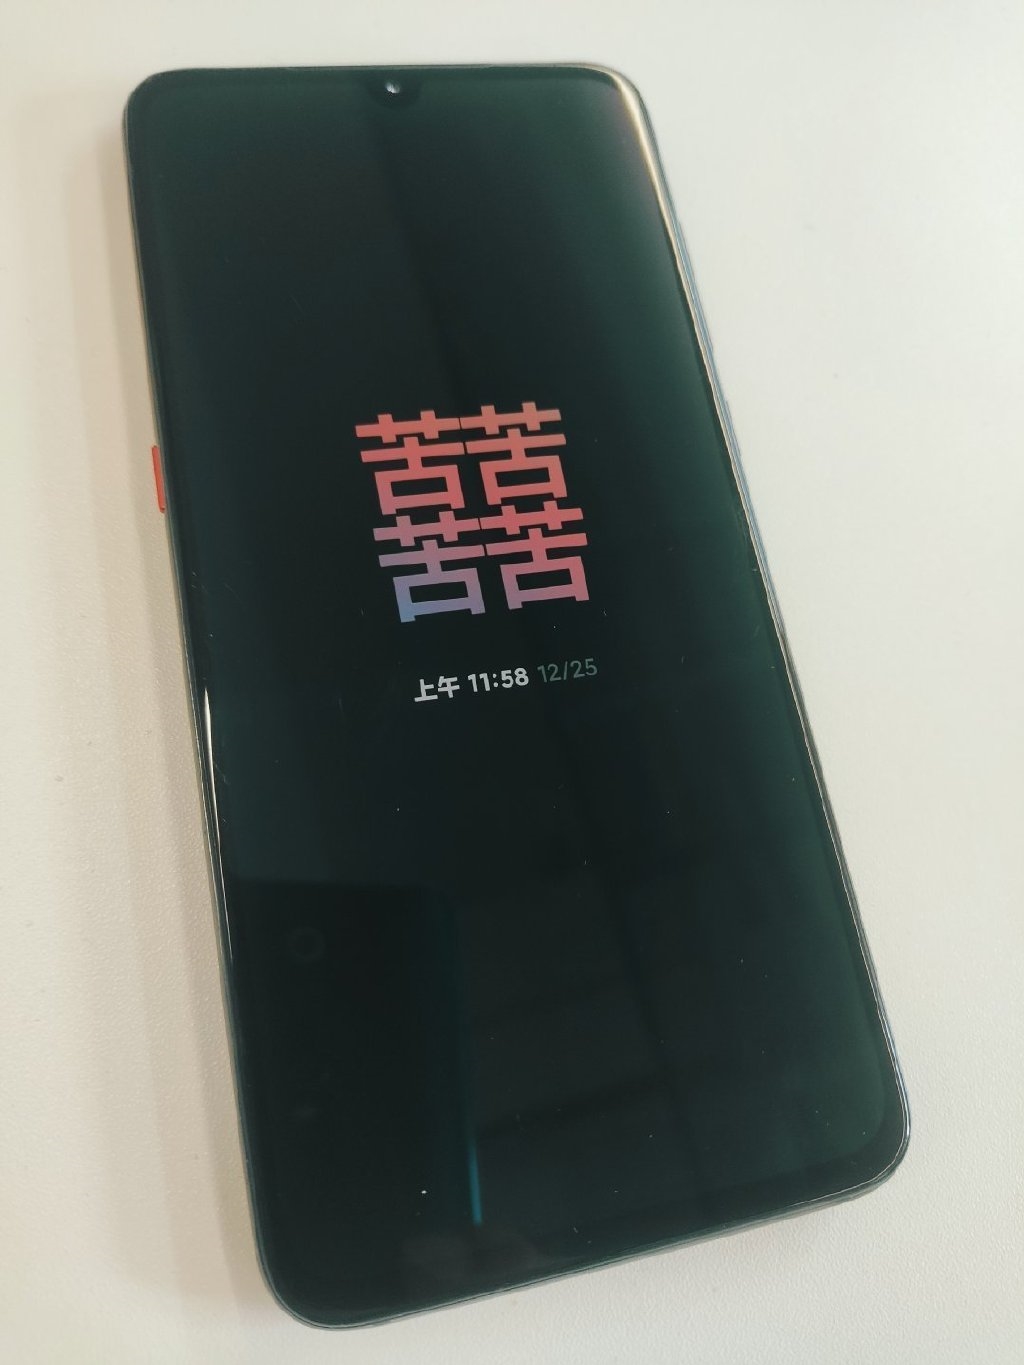 Xiaomi Amoled Display